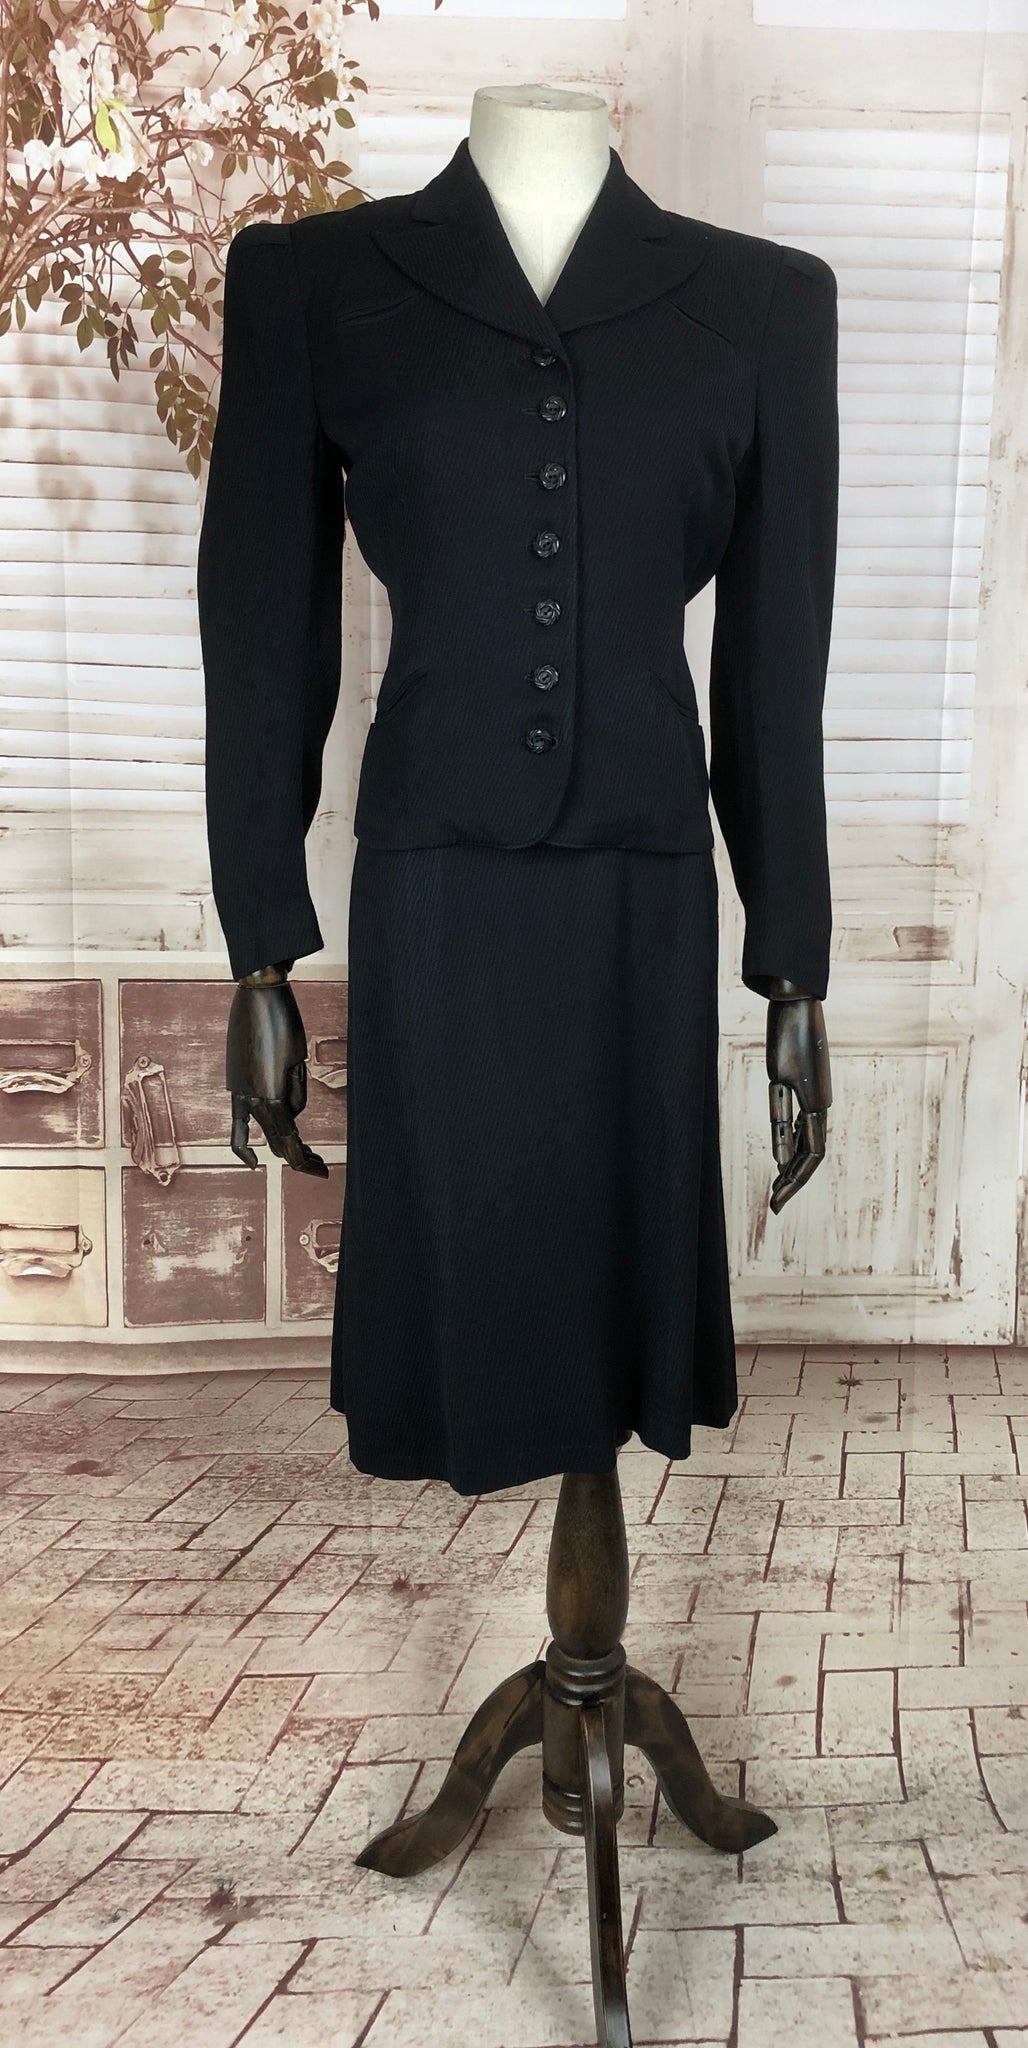 Original 1930s 30s Vintage Navy Blue Cotton Skirt Suit With Diagonal R ...